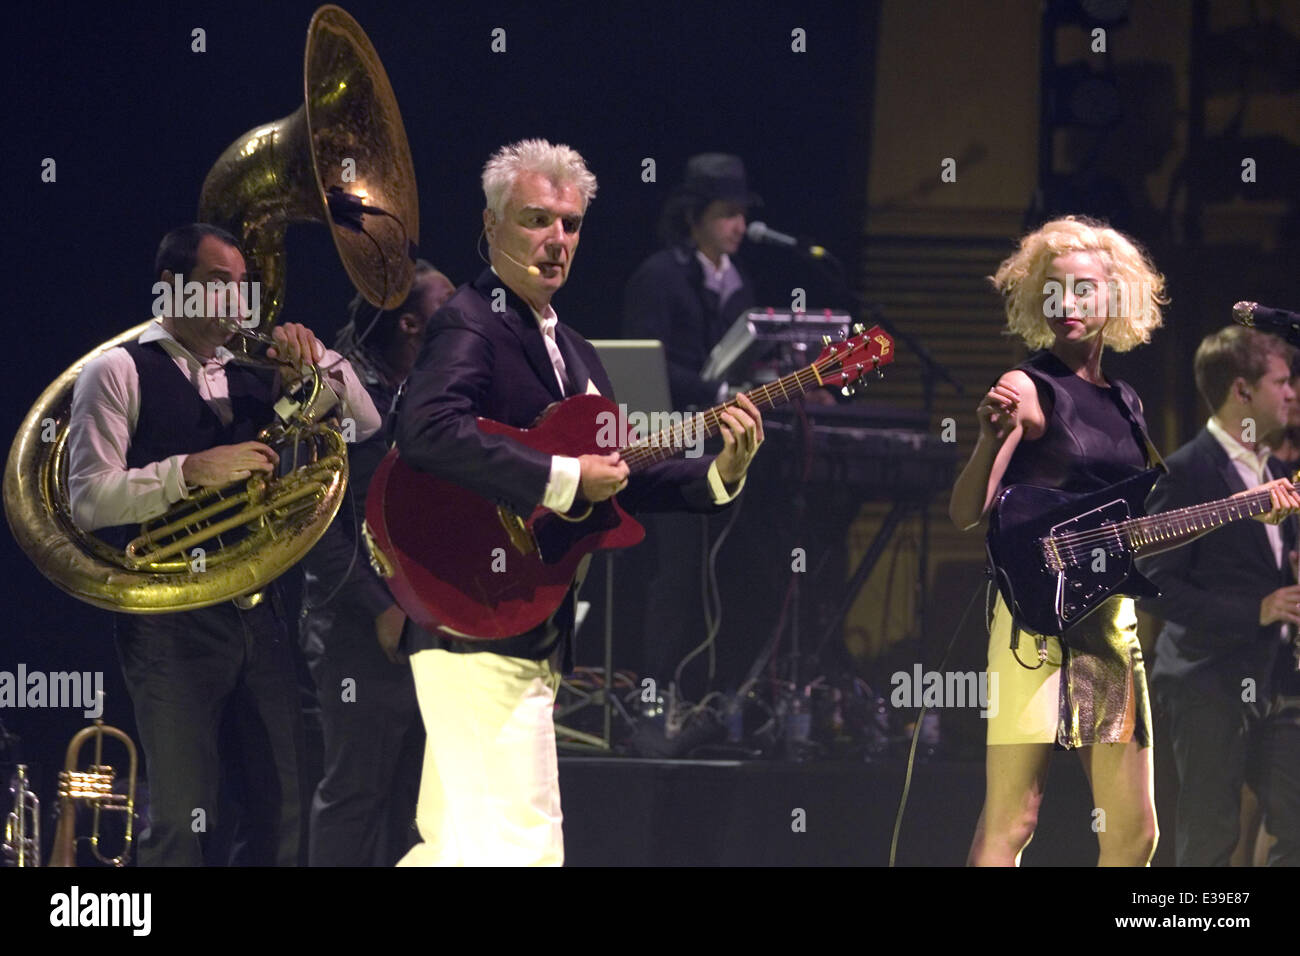 David Byrne et St Vincent effectuer au cours d'une garniture de concert au Glasgow Royal Concert Hall avec : David Byrne,St Vincent,Annie Clark Où : Glasgow, Royaume-Uni Quand : 29 août 2013 Banque D'Images